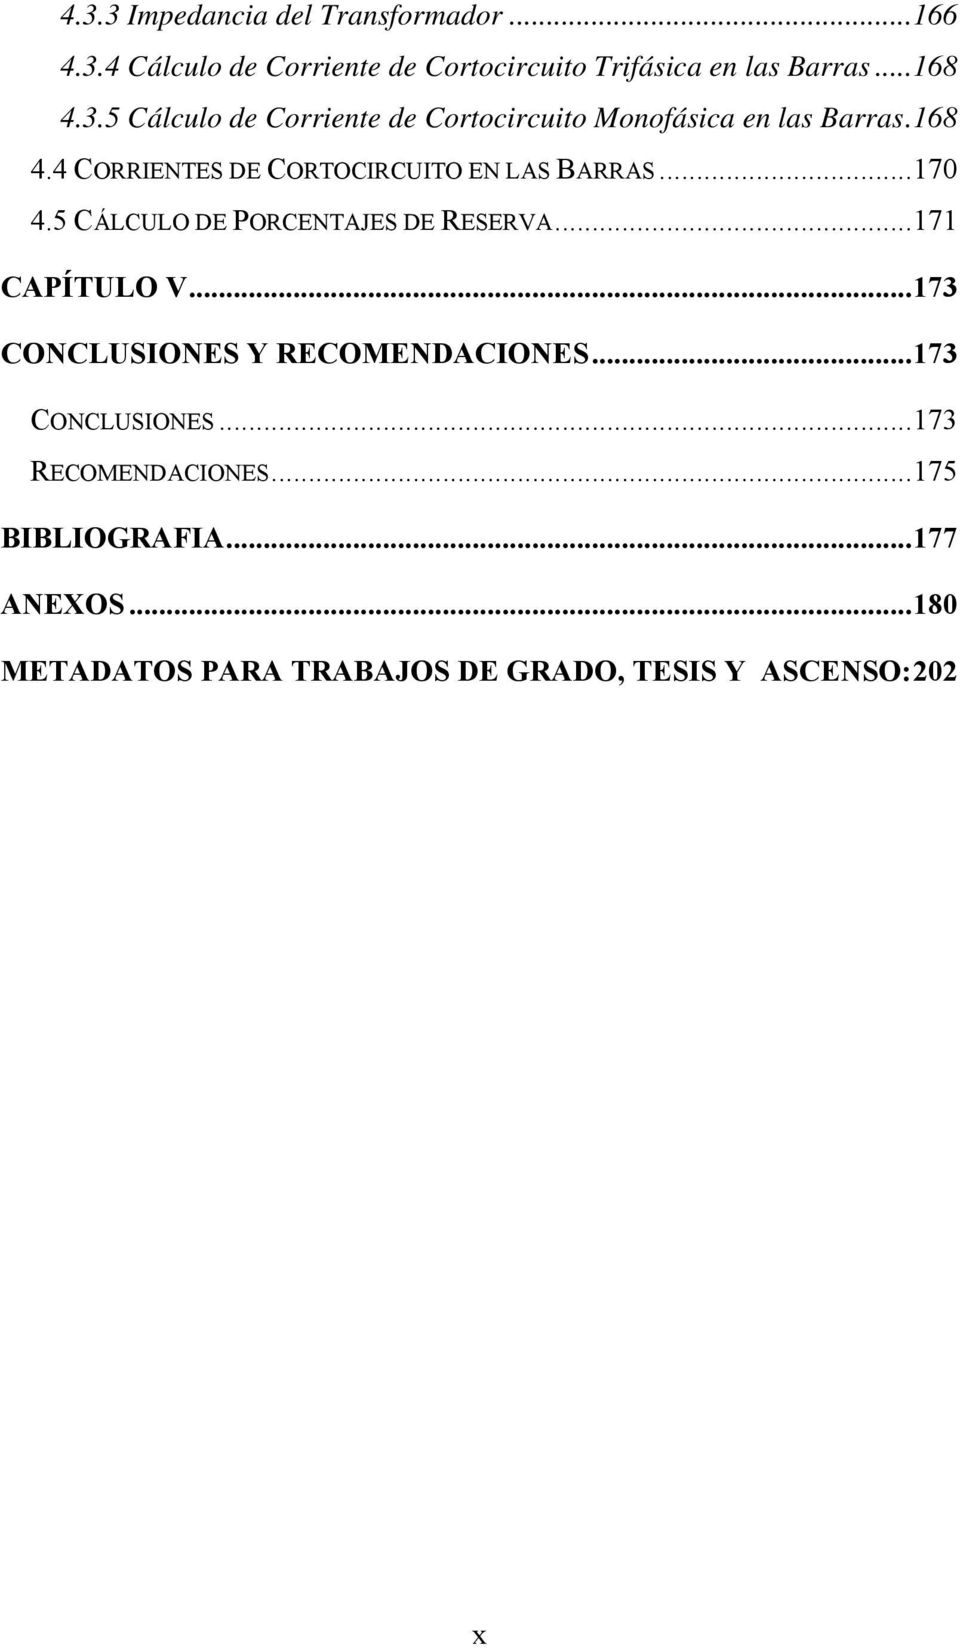 ..170 4.5 CÁLCULO DE PORCENTAJES DE RESERVA...171 CAPÍTULO V...173 CONCLUSIONES Y RECOMENDACIONES...173 CONCLUSIONES...173 RECOMENDACIONES.